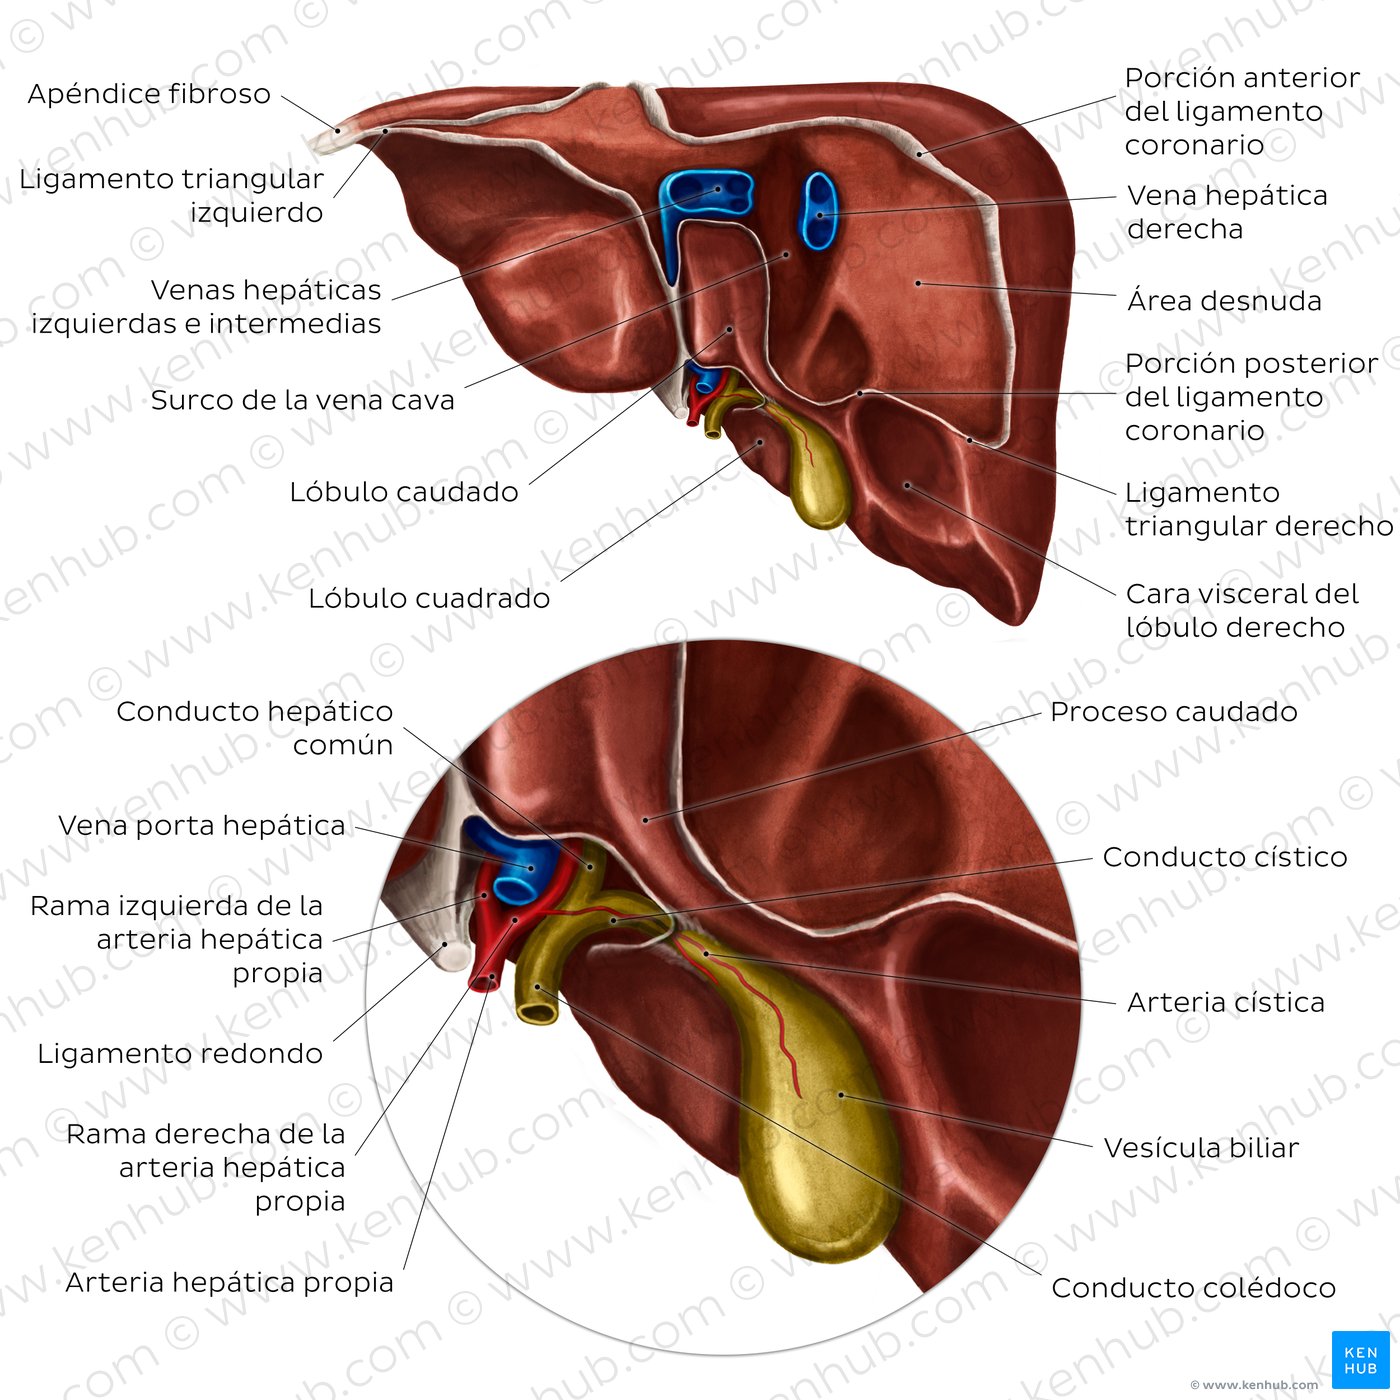 Anatomía del hígado: Vista posterior